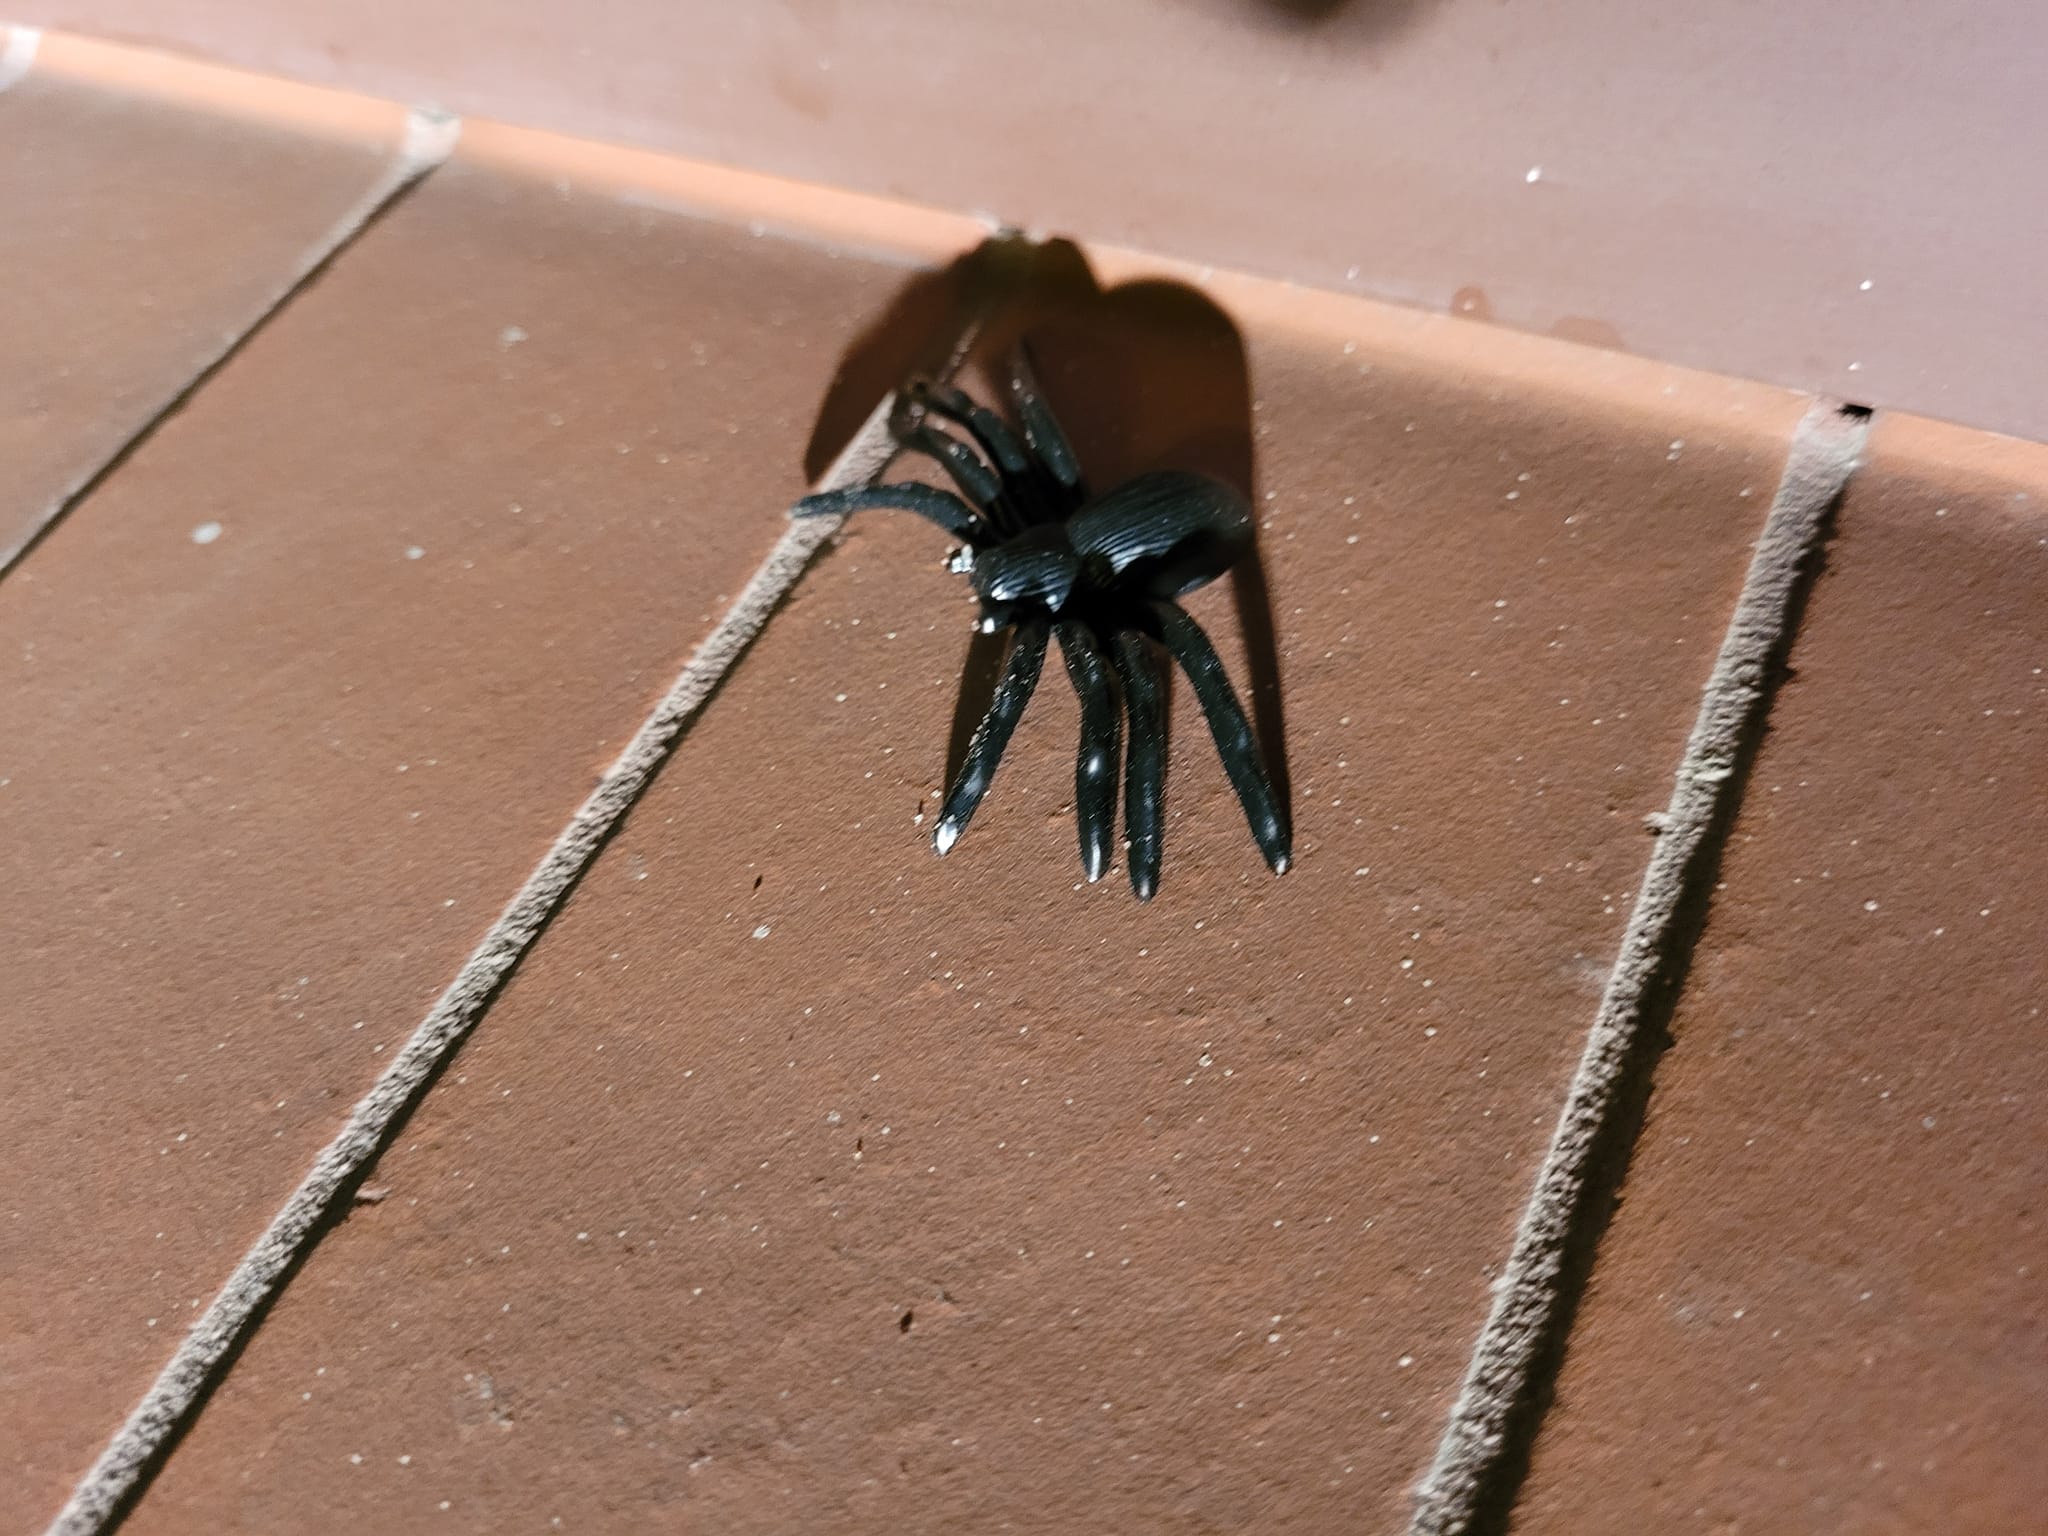 Wielki, włochaty i groźny pająk przeraził mieszkankę Lublina. Ptasznik okazał się plastikową zabawką (zdjęcia)